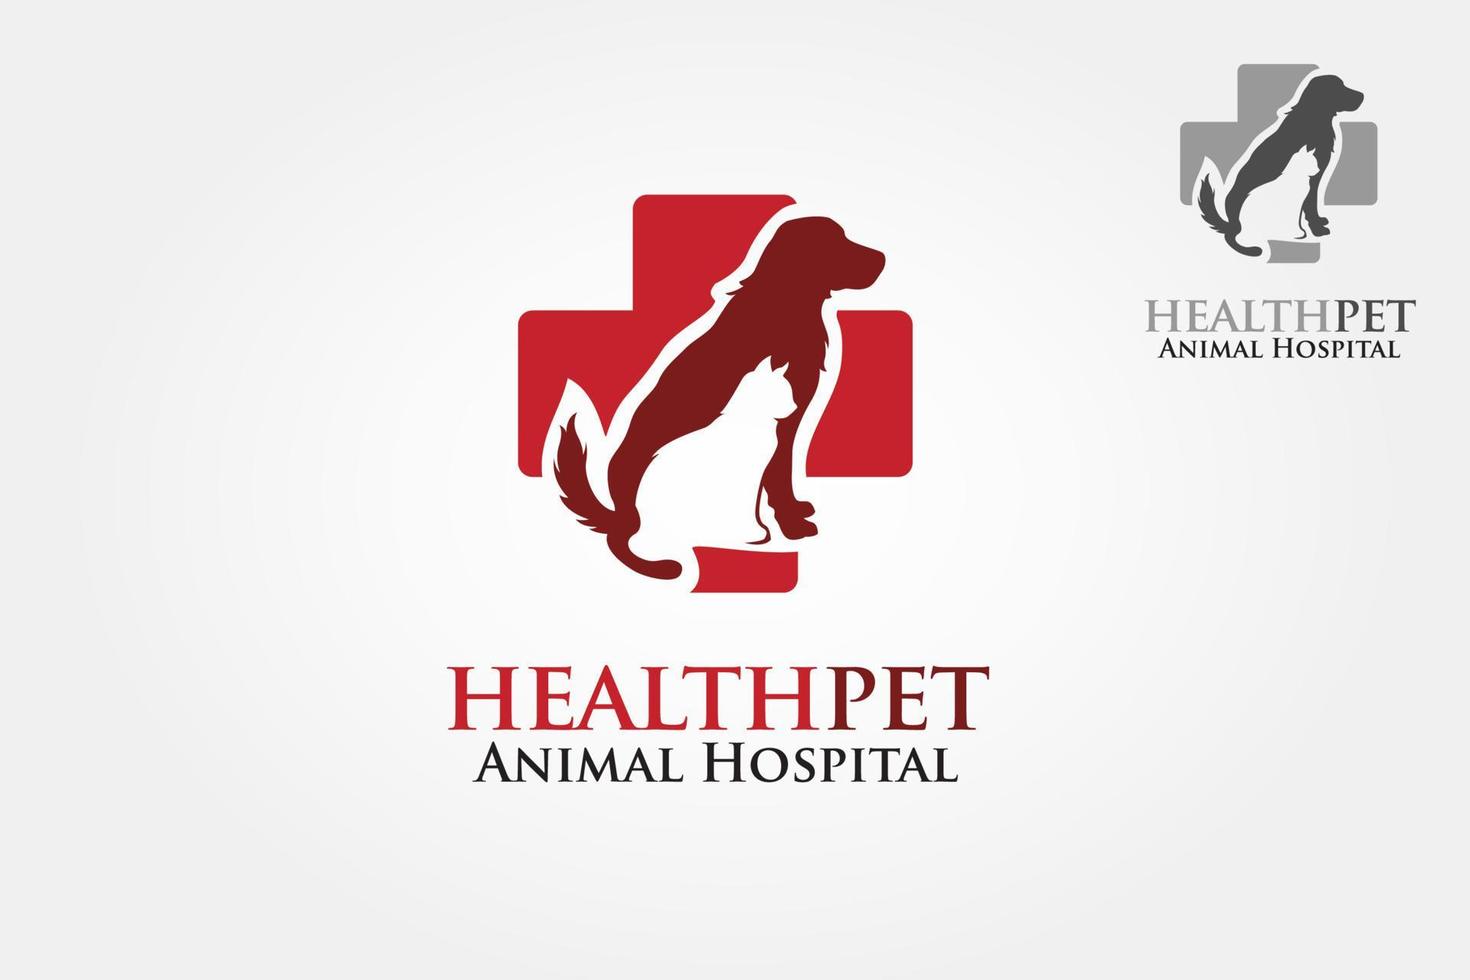 Gesundheit Haustiere Vektor-Logo-Vorlage. Vektorsilhouetten von Katze und Hund auf dem Plakat für Veterinärgeschäft oder -klinik. vektor